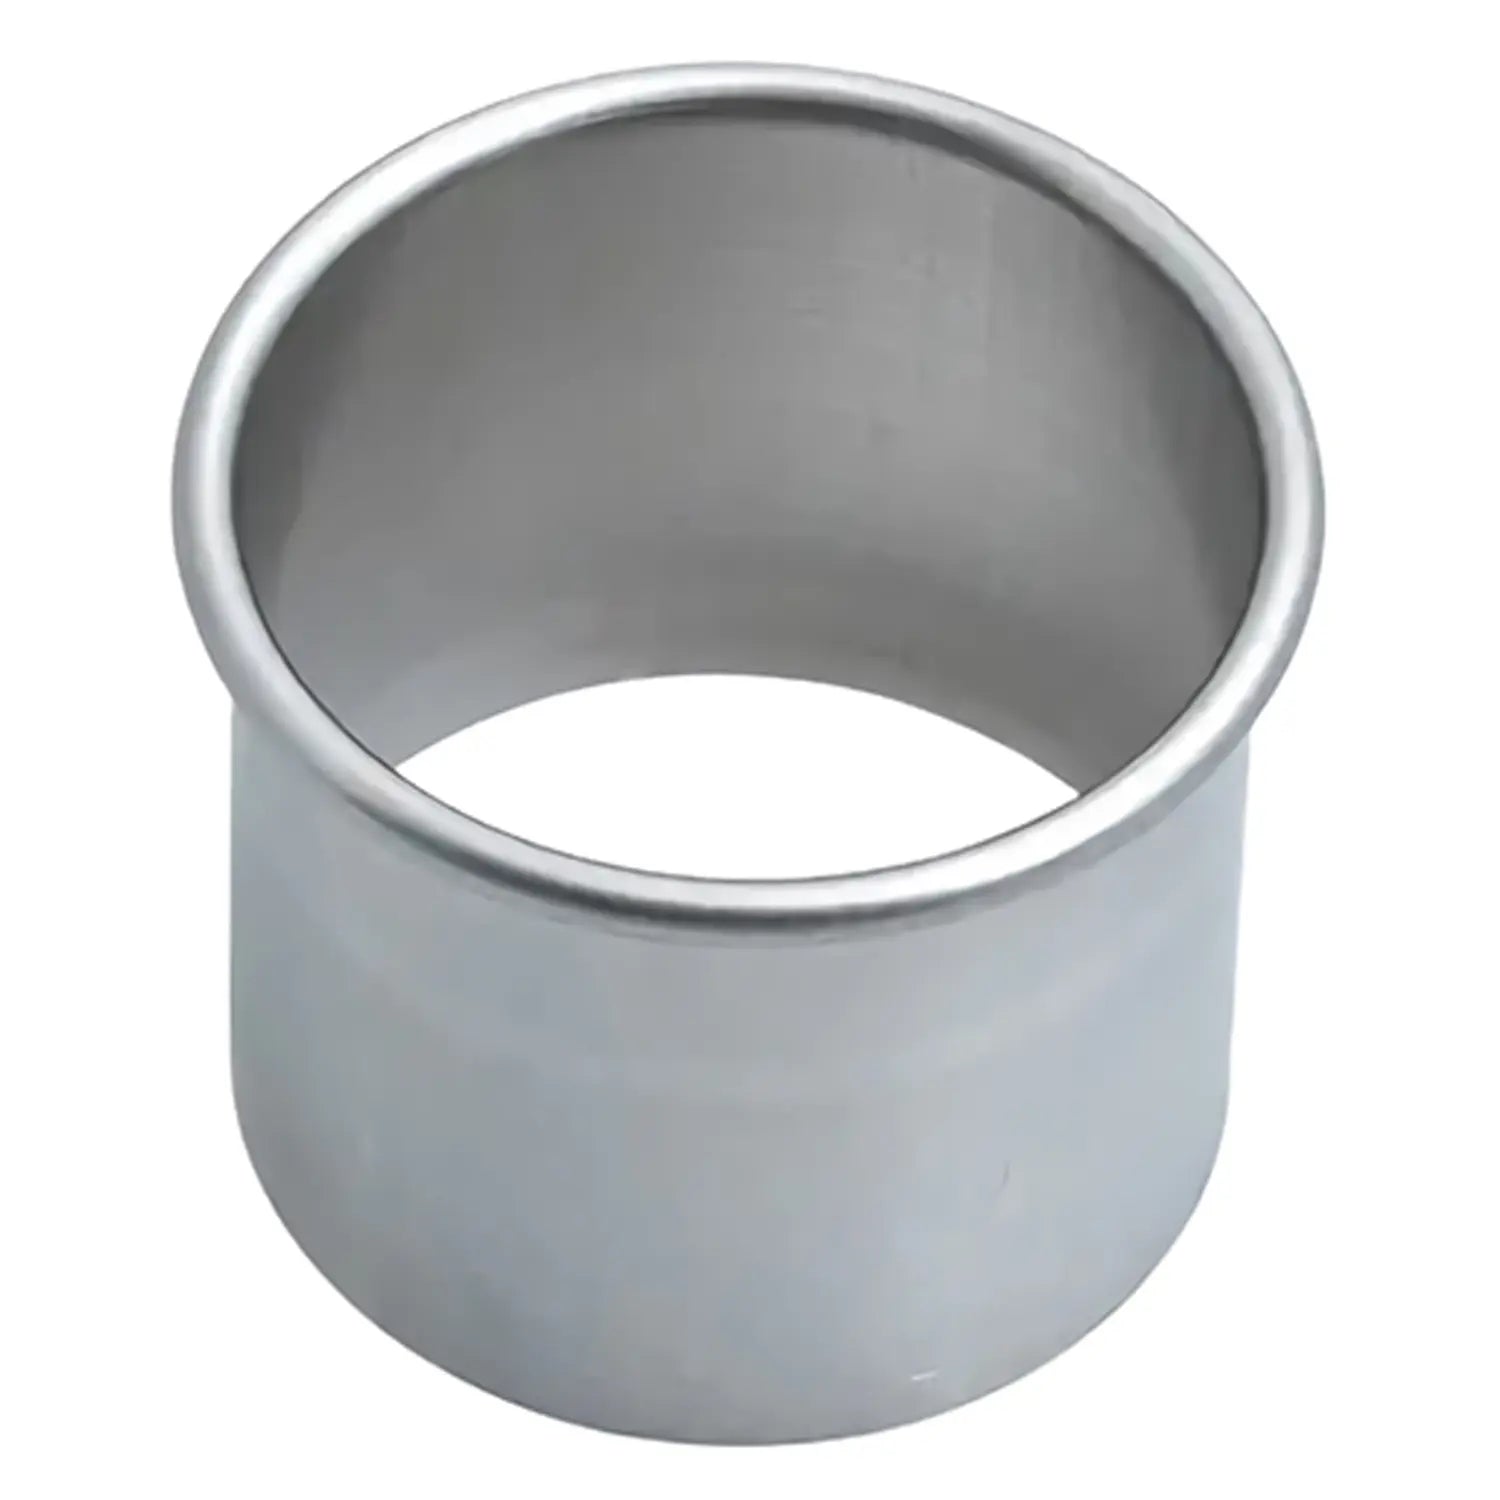 Wadasuke Stainless Steel Induction Shabu Shabu Hot Pot With Divider (N